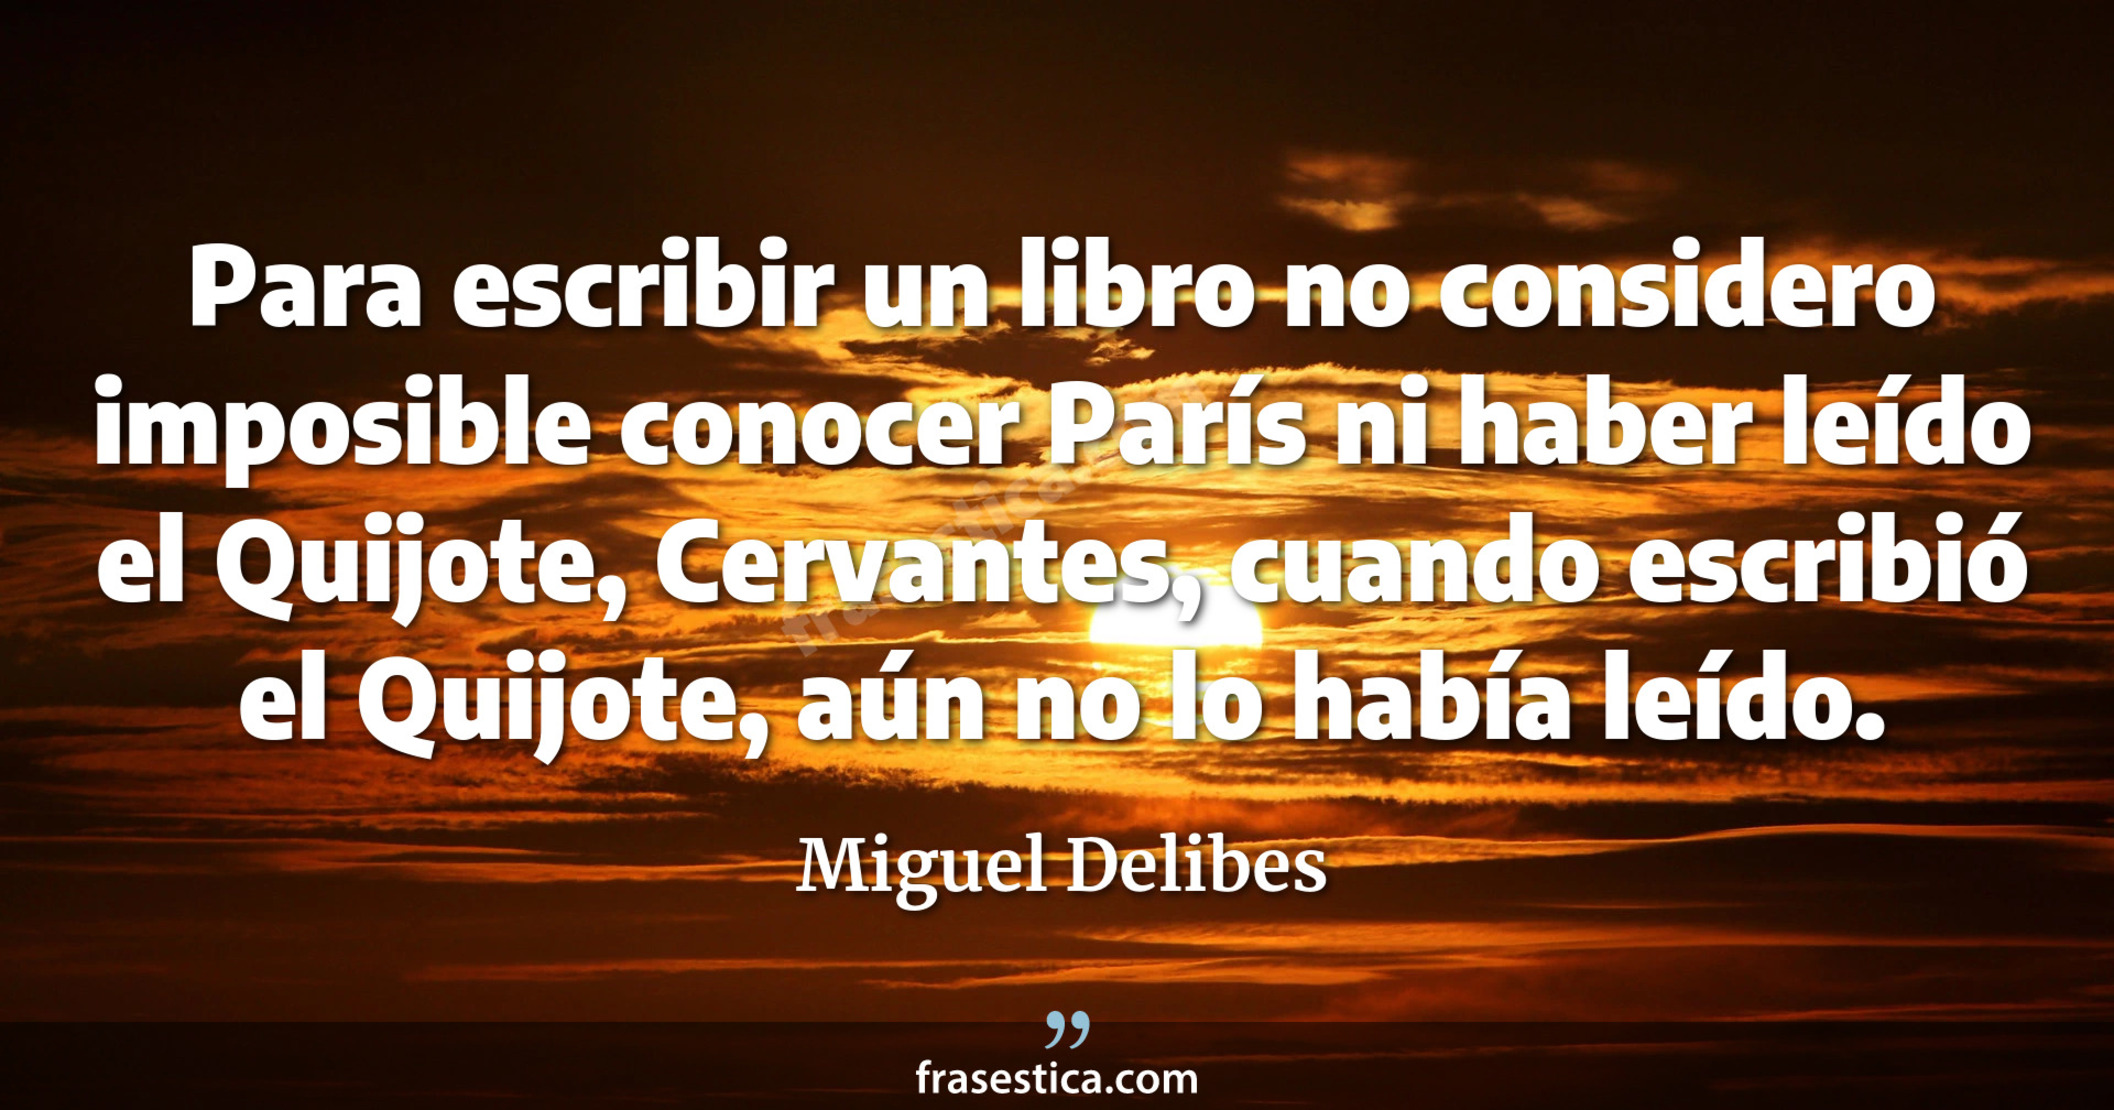 Para escribir un libro no considero imposible conocer París ni haber leído el Quijote, Cervantes, cuando escribió el Quijote, aún no lo había leído. - Miguel Delibes